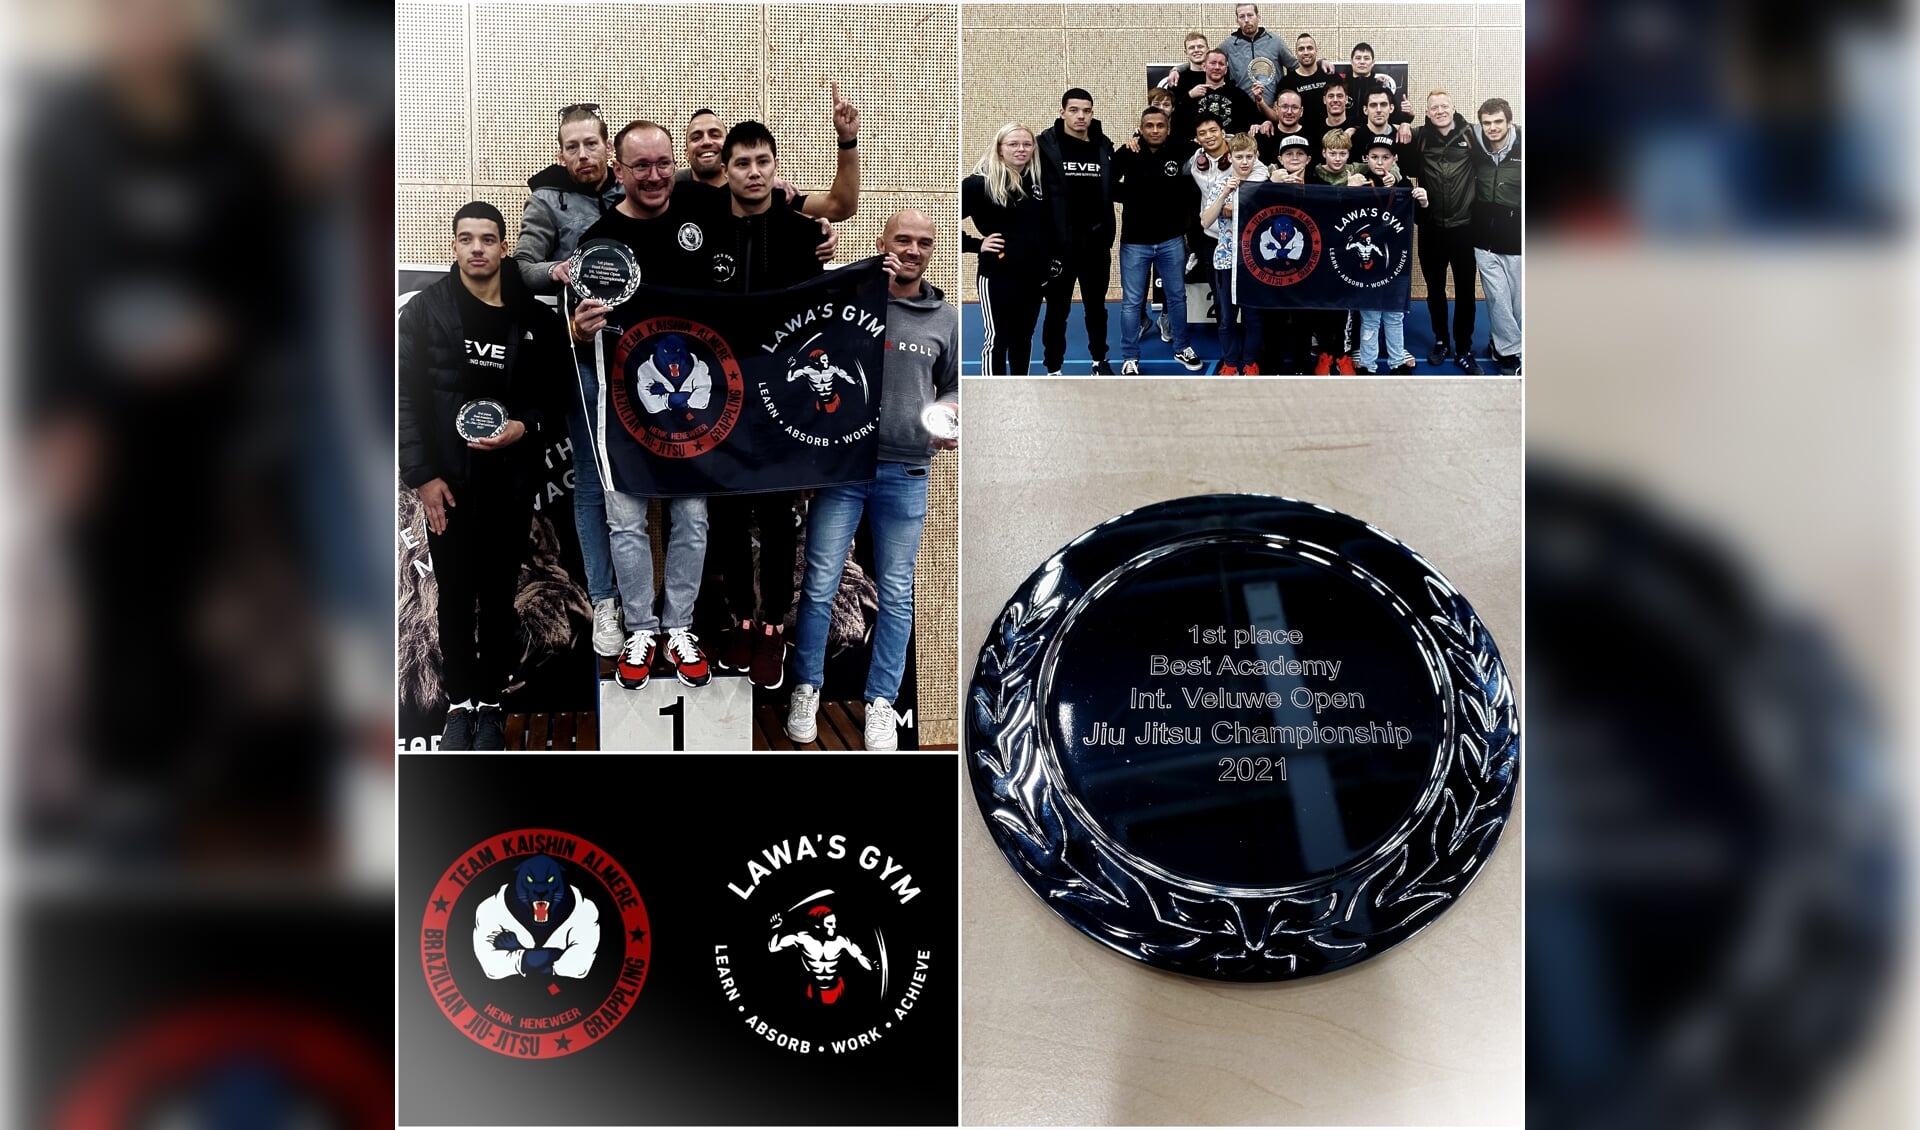 International Veluwe Open Jiu Jitsu Championship 2021